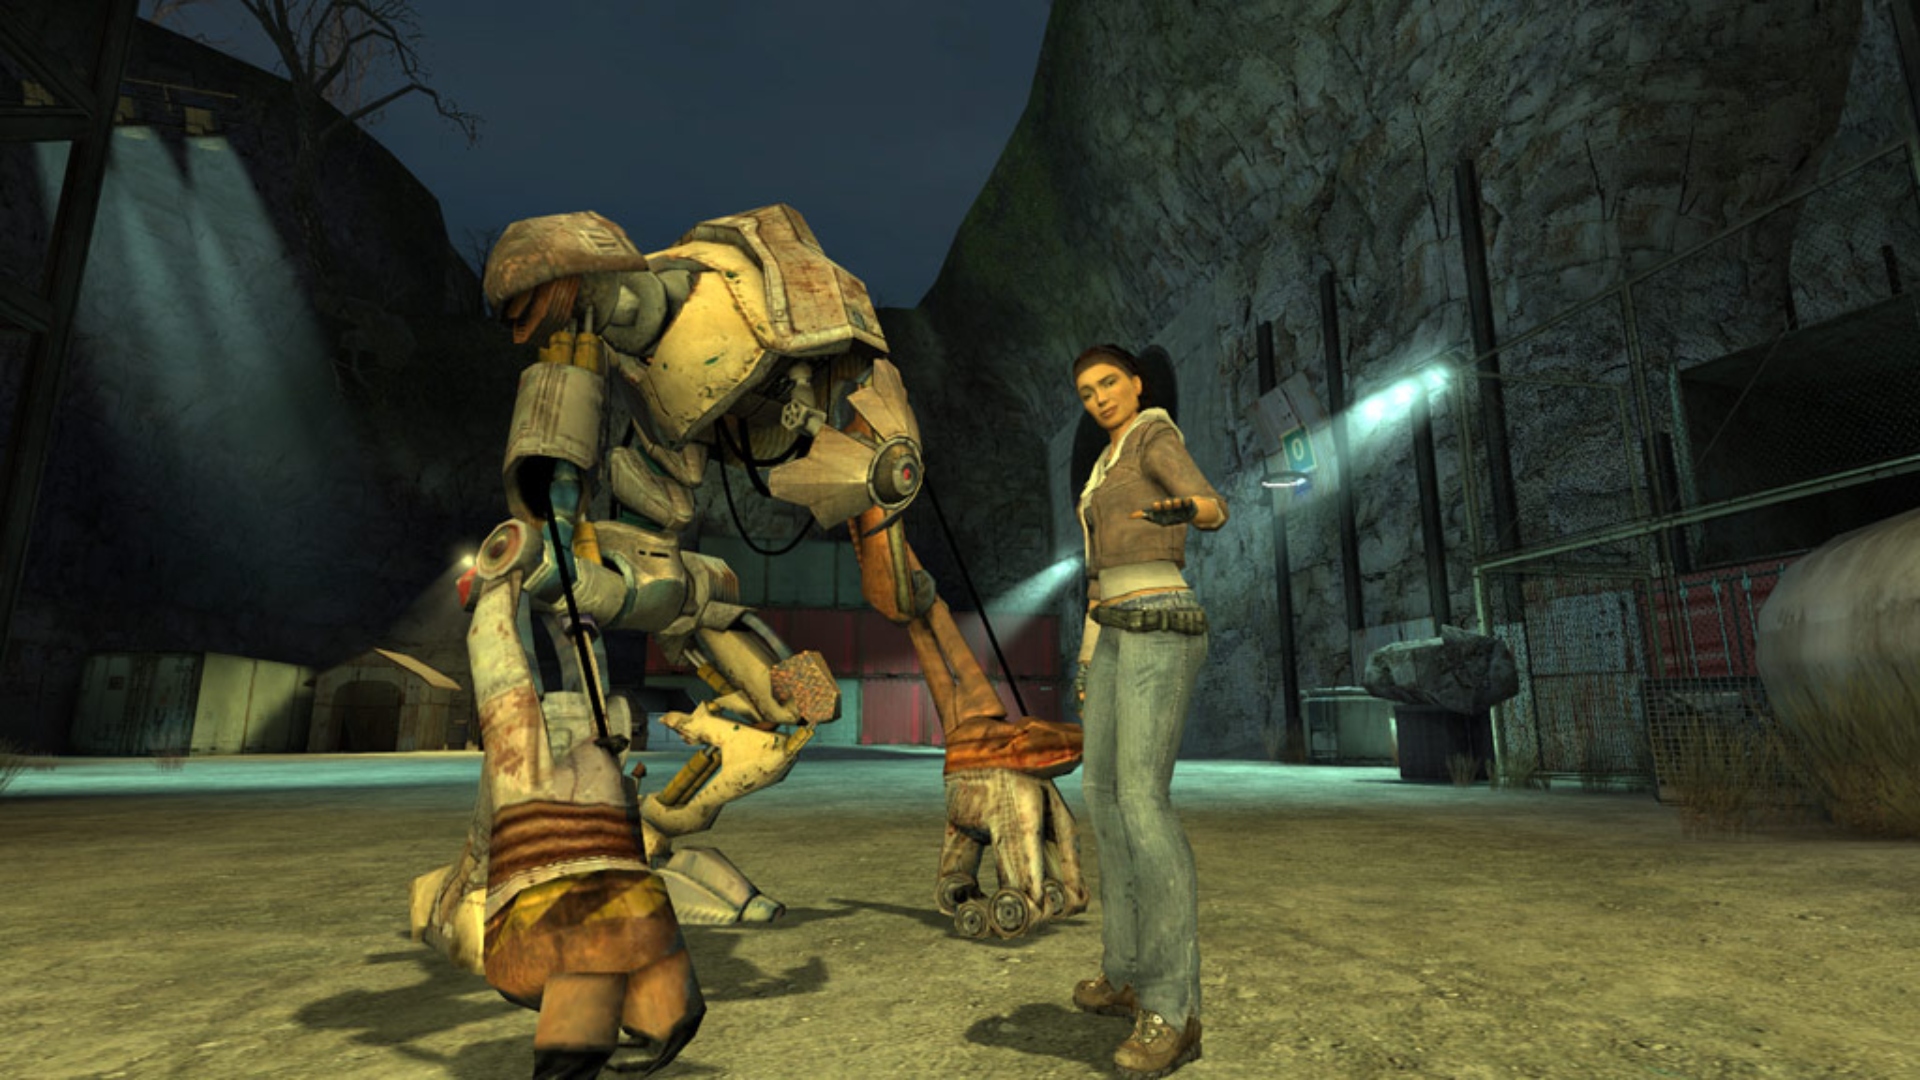 Nuovo di emivita: una giovane donna, Alix Vance, si trova accanto a un robot gigante nella game FPS Valve Half-Life 2